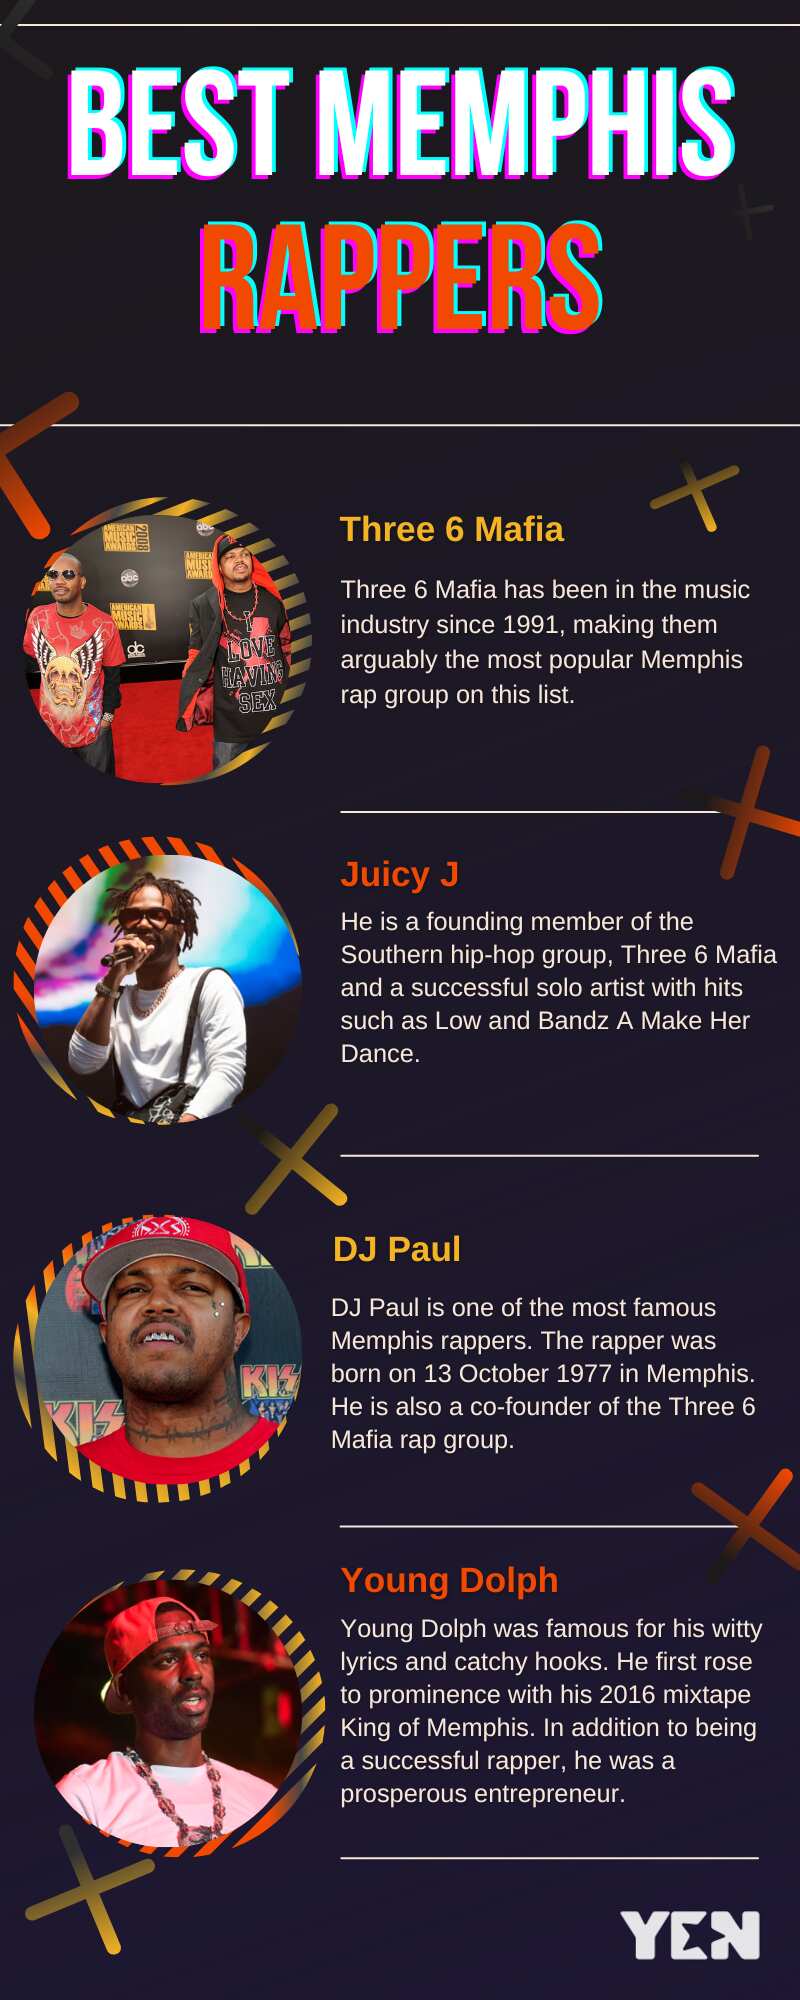 Best Memphis rappers